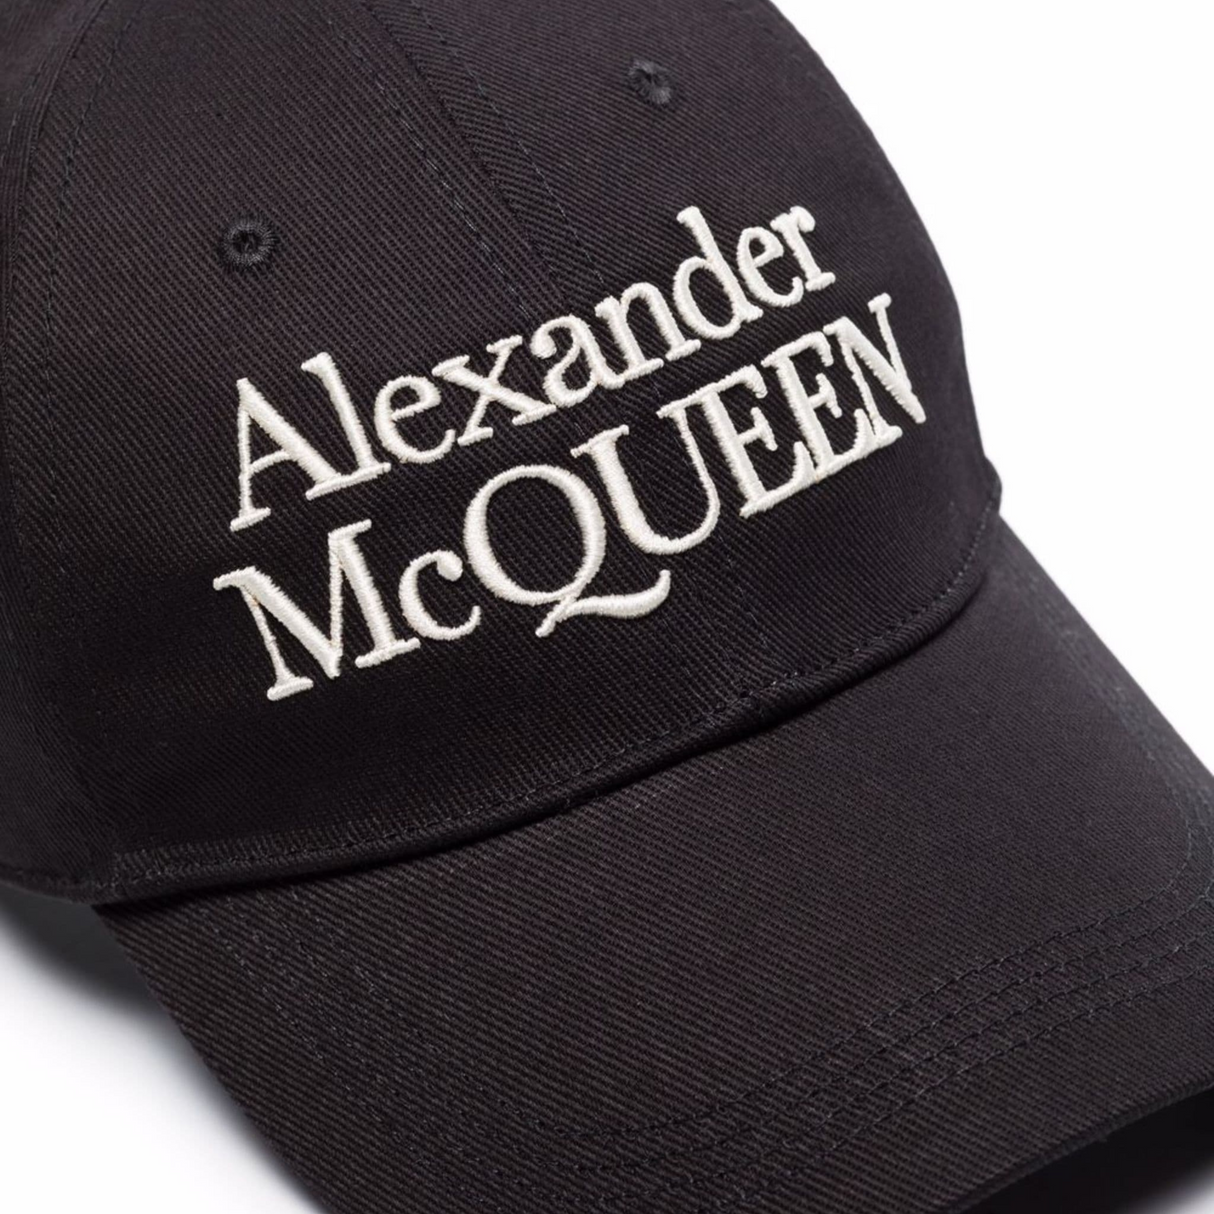 Alexander McQueen Logo Baseball Cap